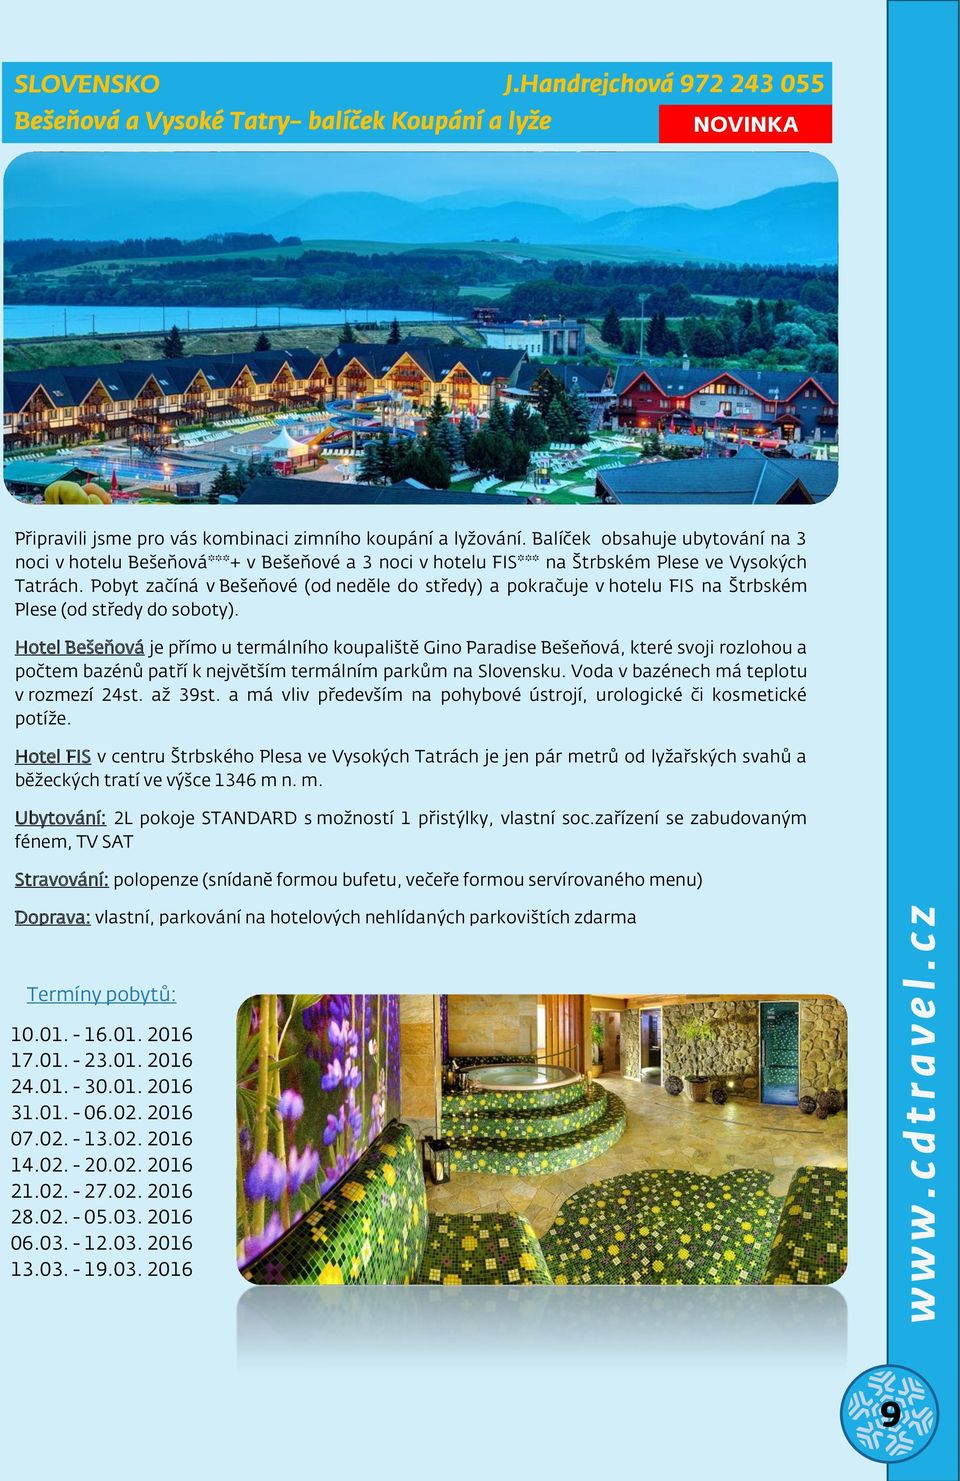 Pobyt začíná v Bešeňové (od neděle do středy) a pokračuje v hotelu FIS na Štrbském Plese (od středy do soboty).